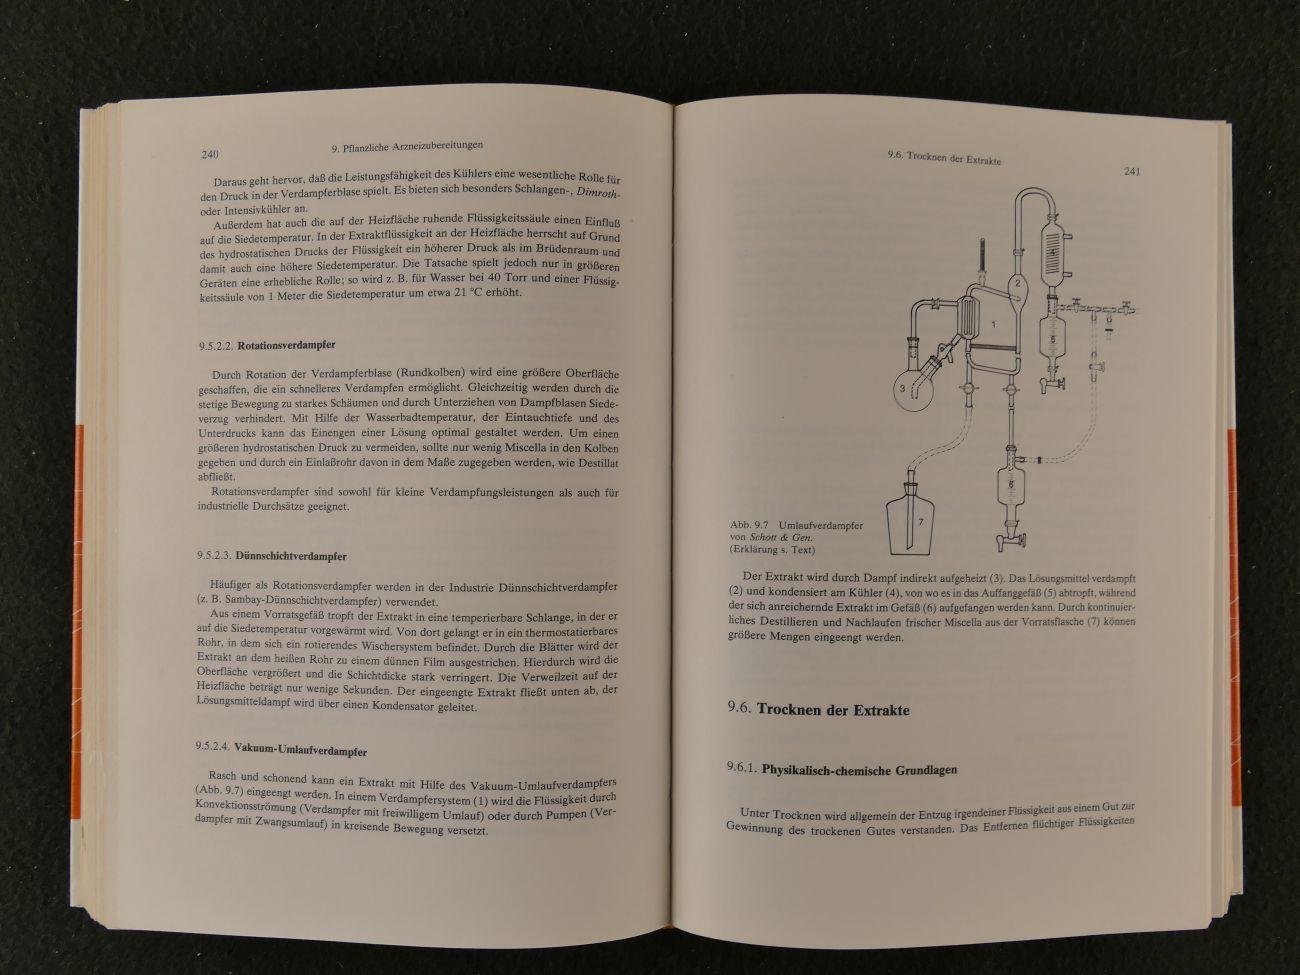 List, Paul Heinz - Arzneiformen-lehre Eind Lehrbuch für Pharmazeuten (3 foto's)